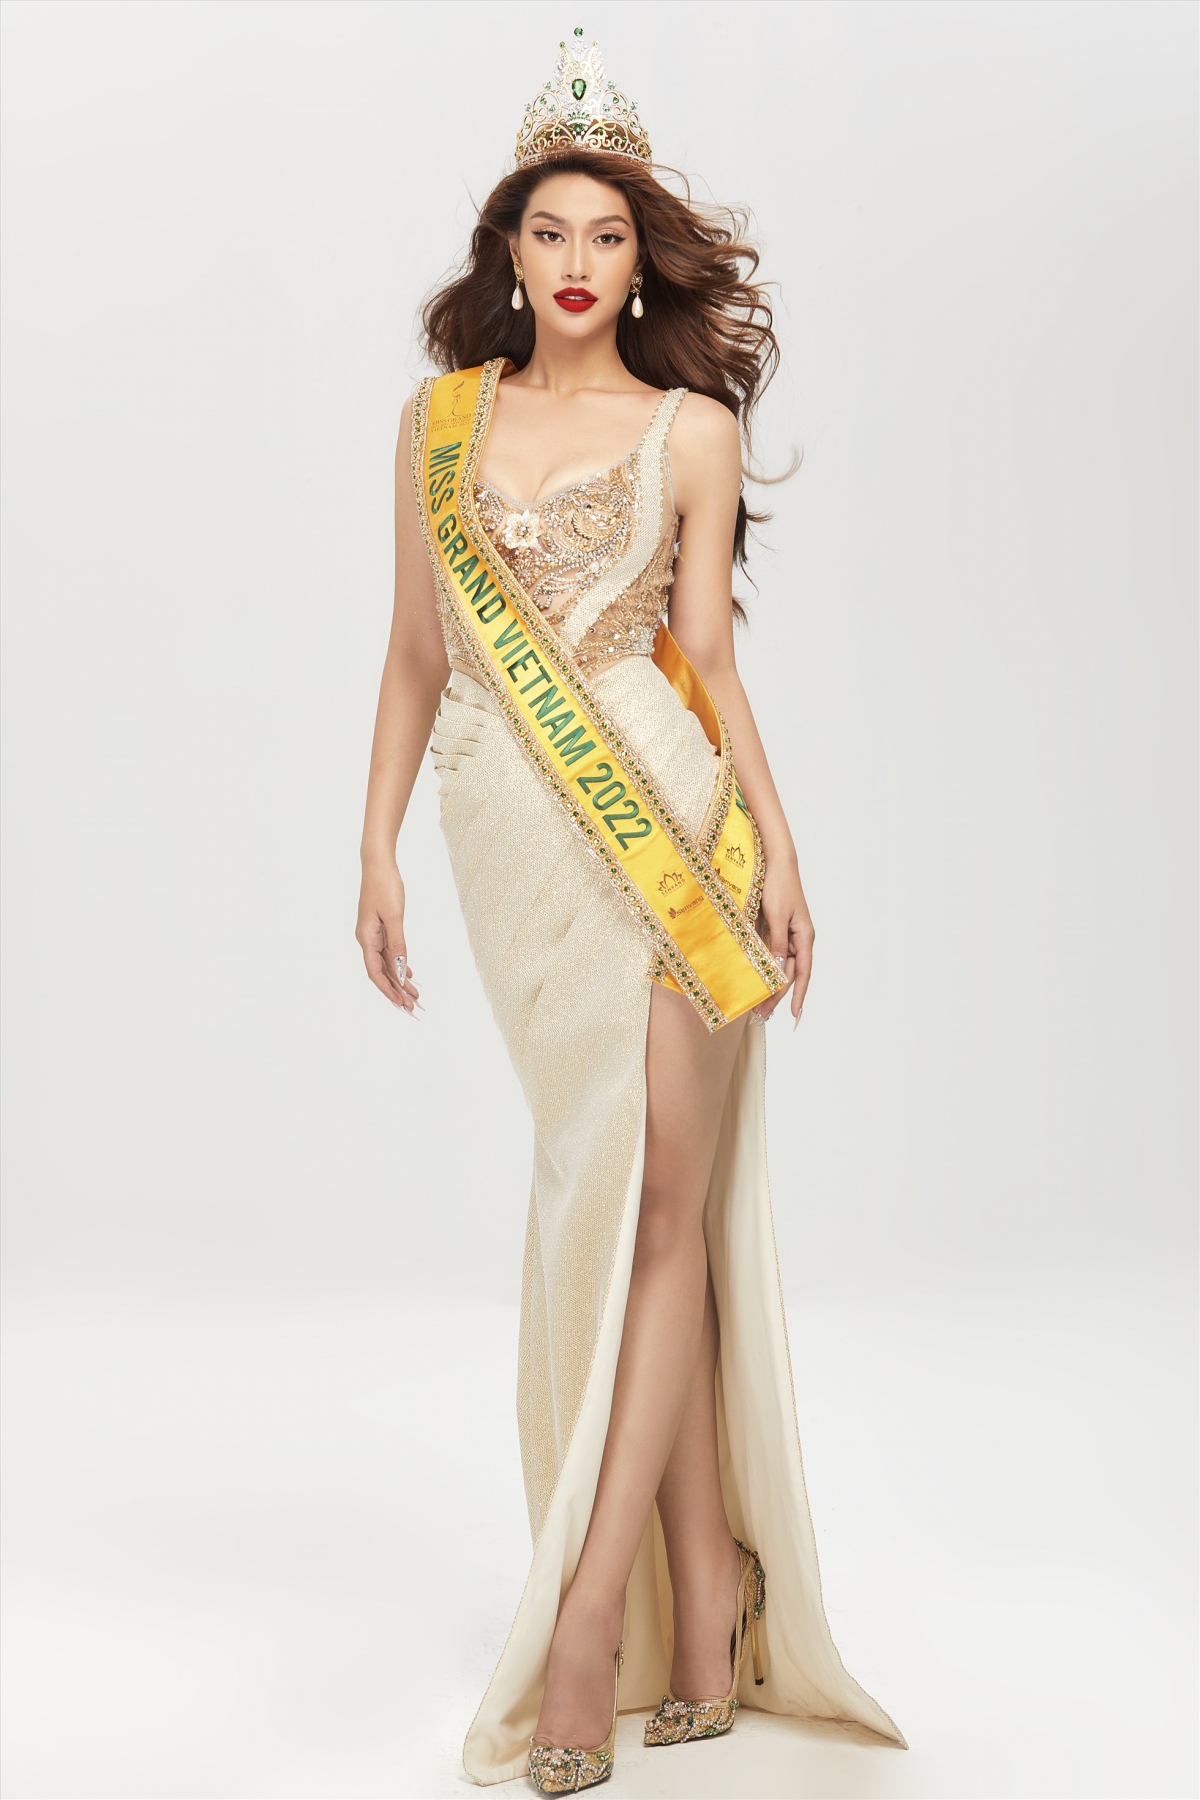 Hoa hậu Đoàn Thiên Ân đặt mục tiêu giành vương miện Miss Grand International